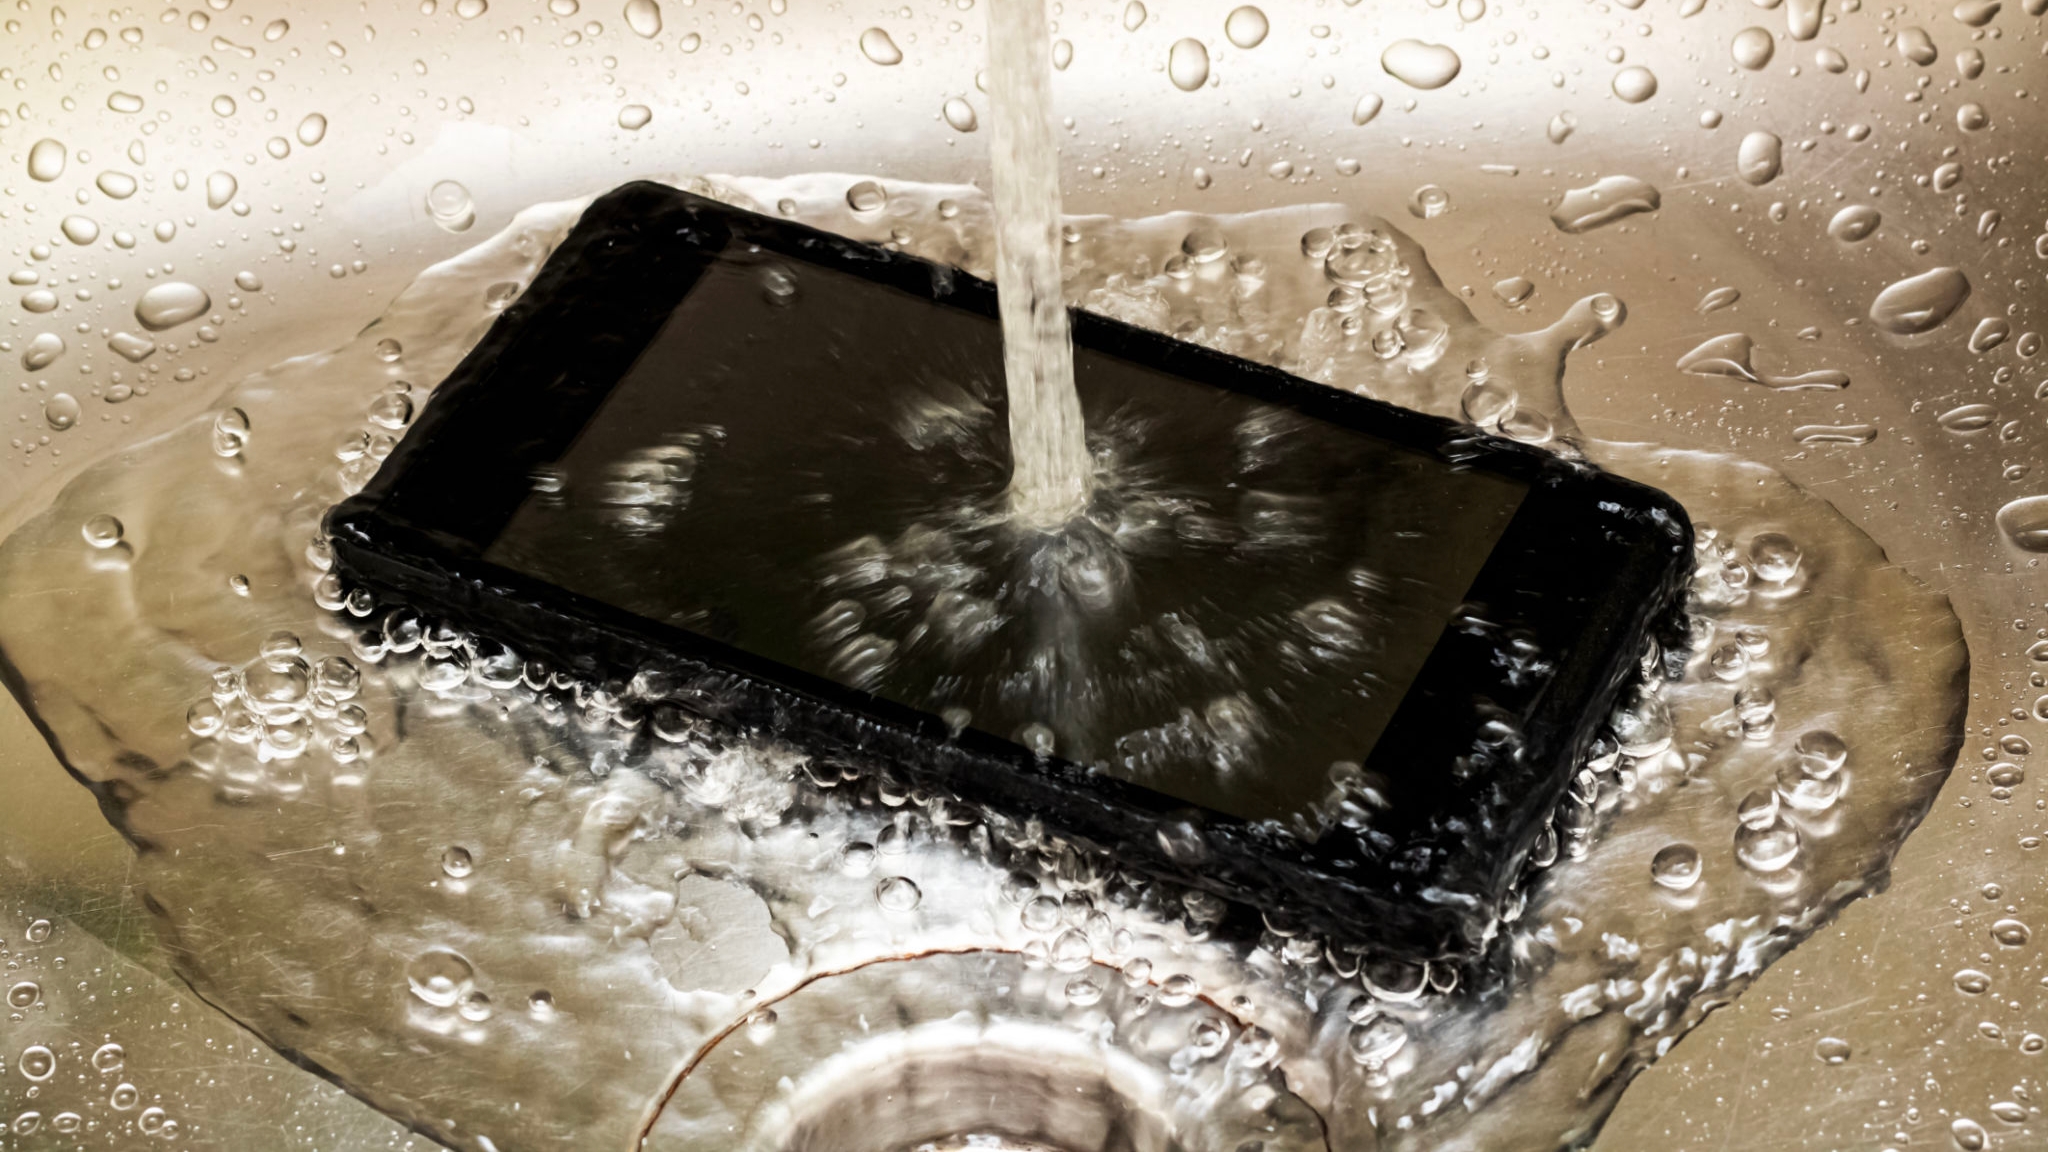 Зарядка телефона в ванной. Смартфон в воде. Охлаждение смартфона. Утопил телефон. Телефон в ванной.